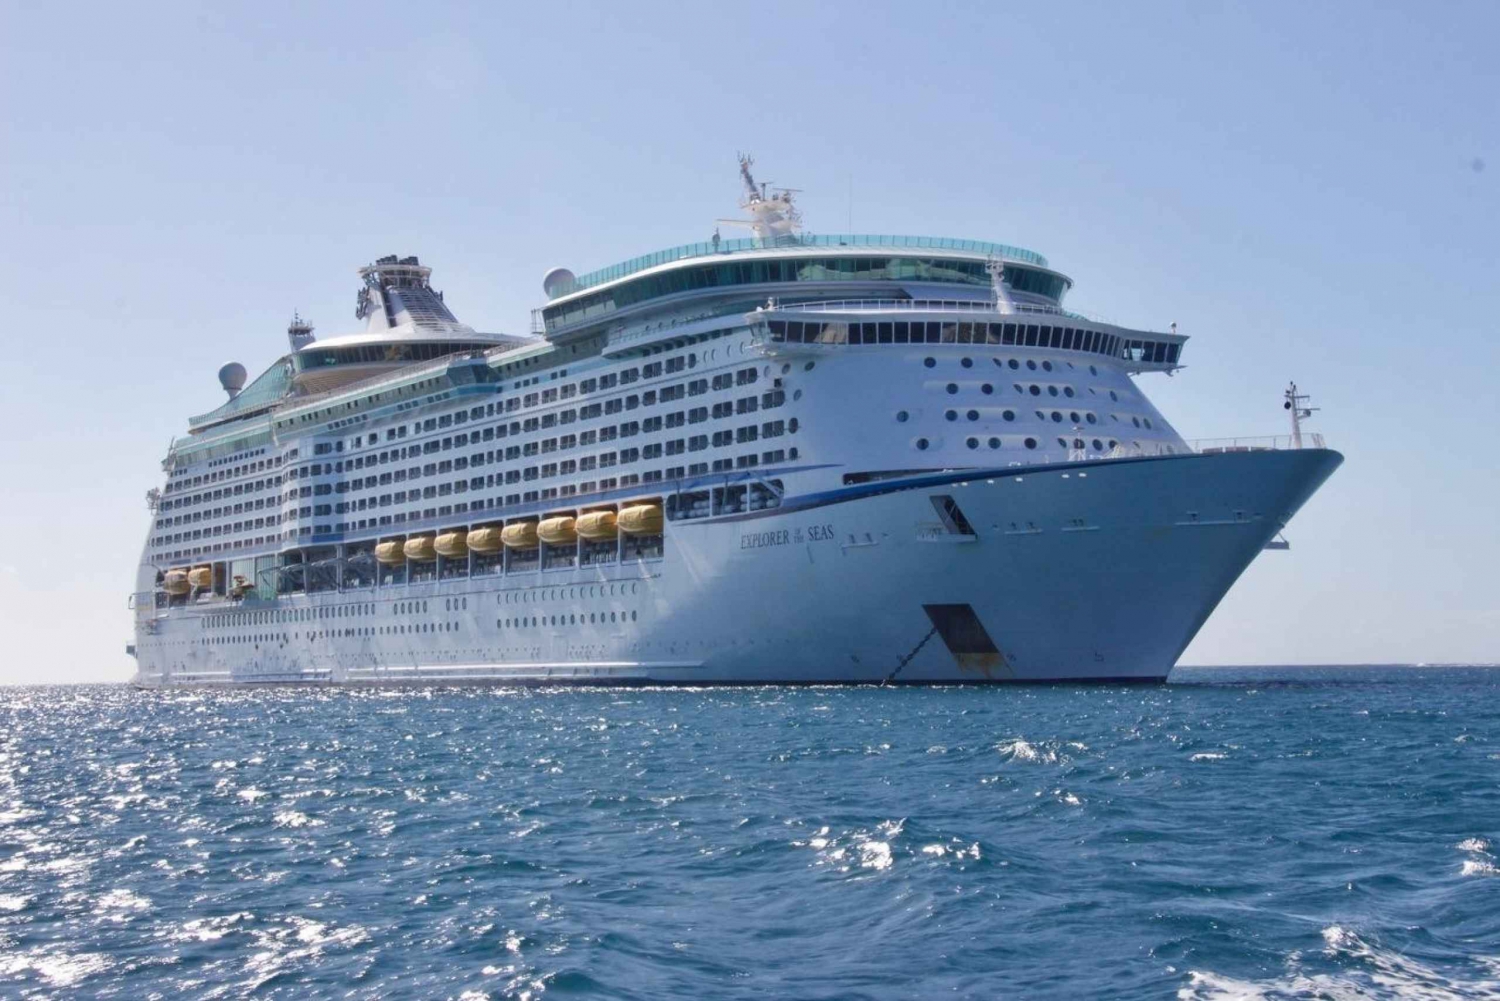 La Romana Cruise Port: Private Transfer to Punta Cana city